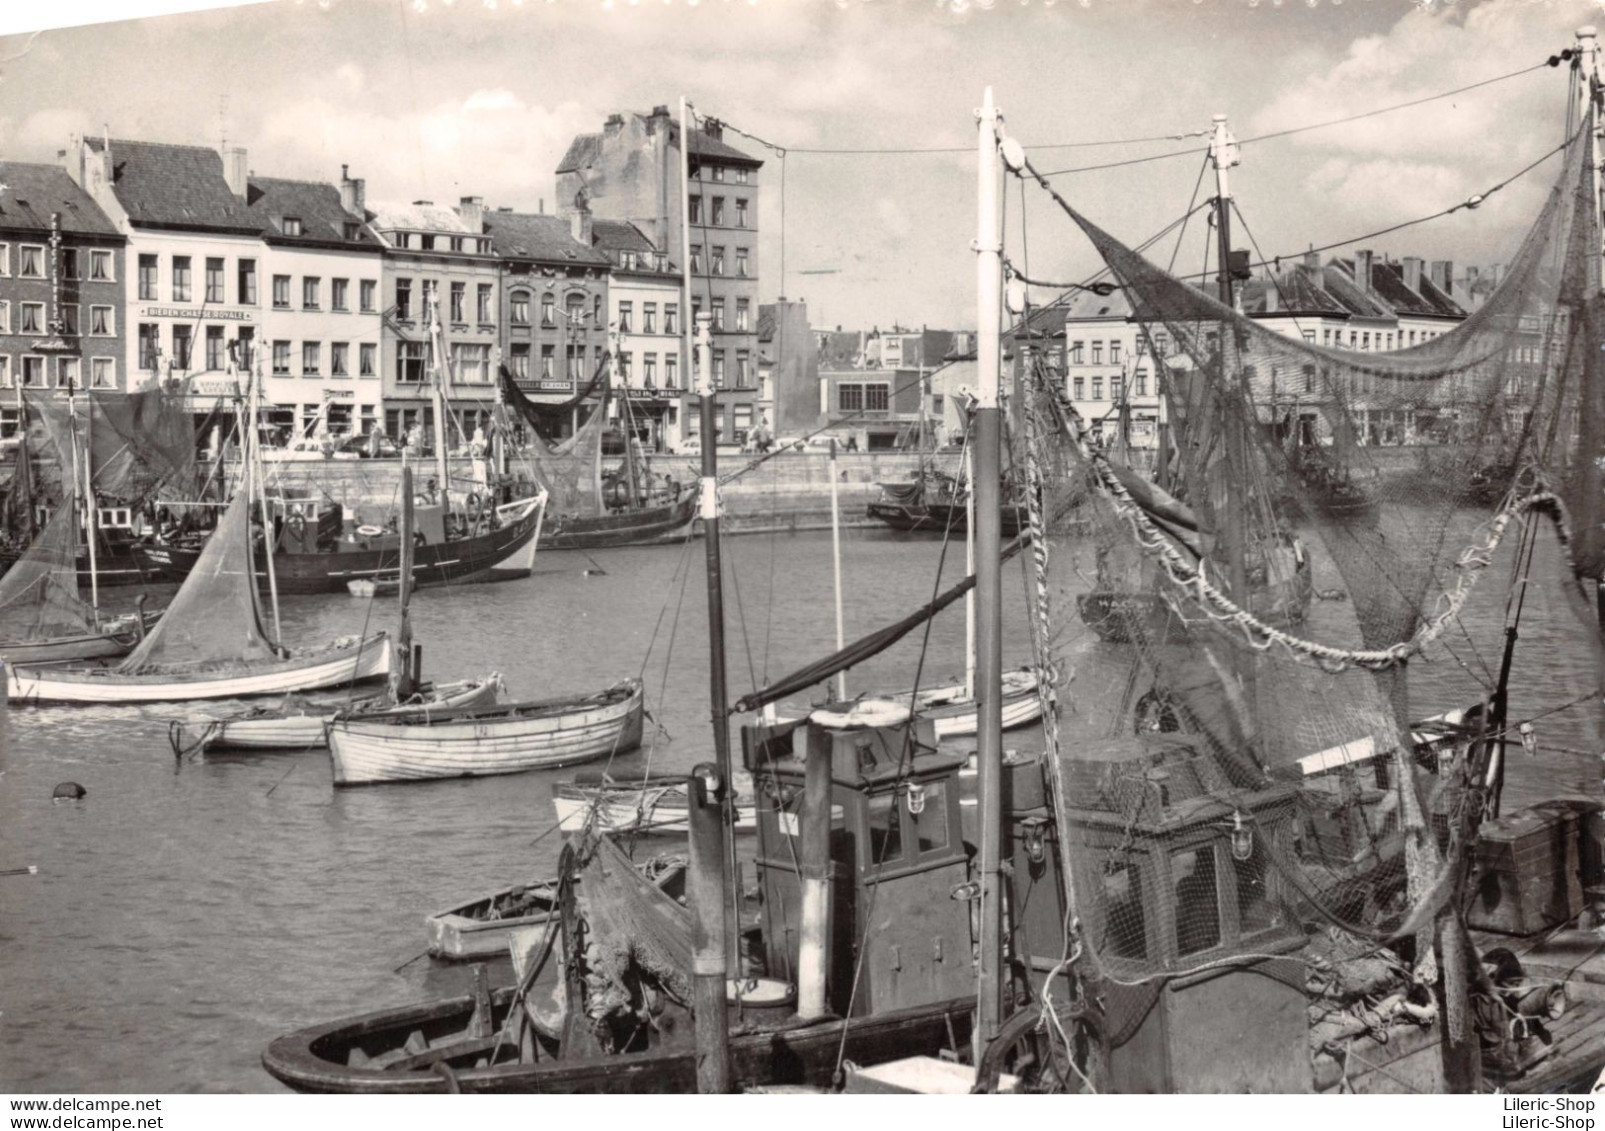 Belgique > Flandre Occidentale - Oostende - Port De Pêche Cpsm GF1969 ♦♦♦ - Oostende